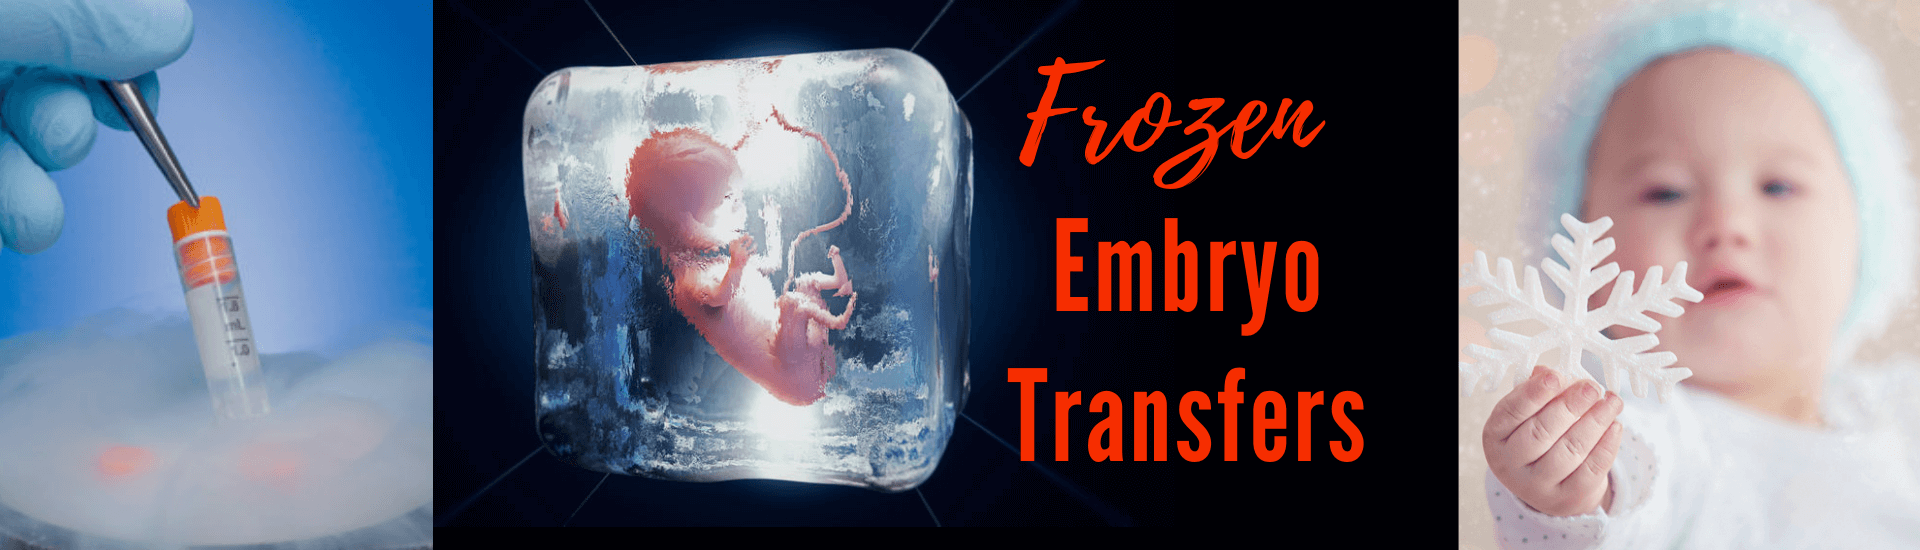 FET is frozen embryo transfers at zoi fertility